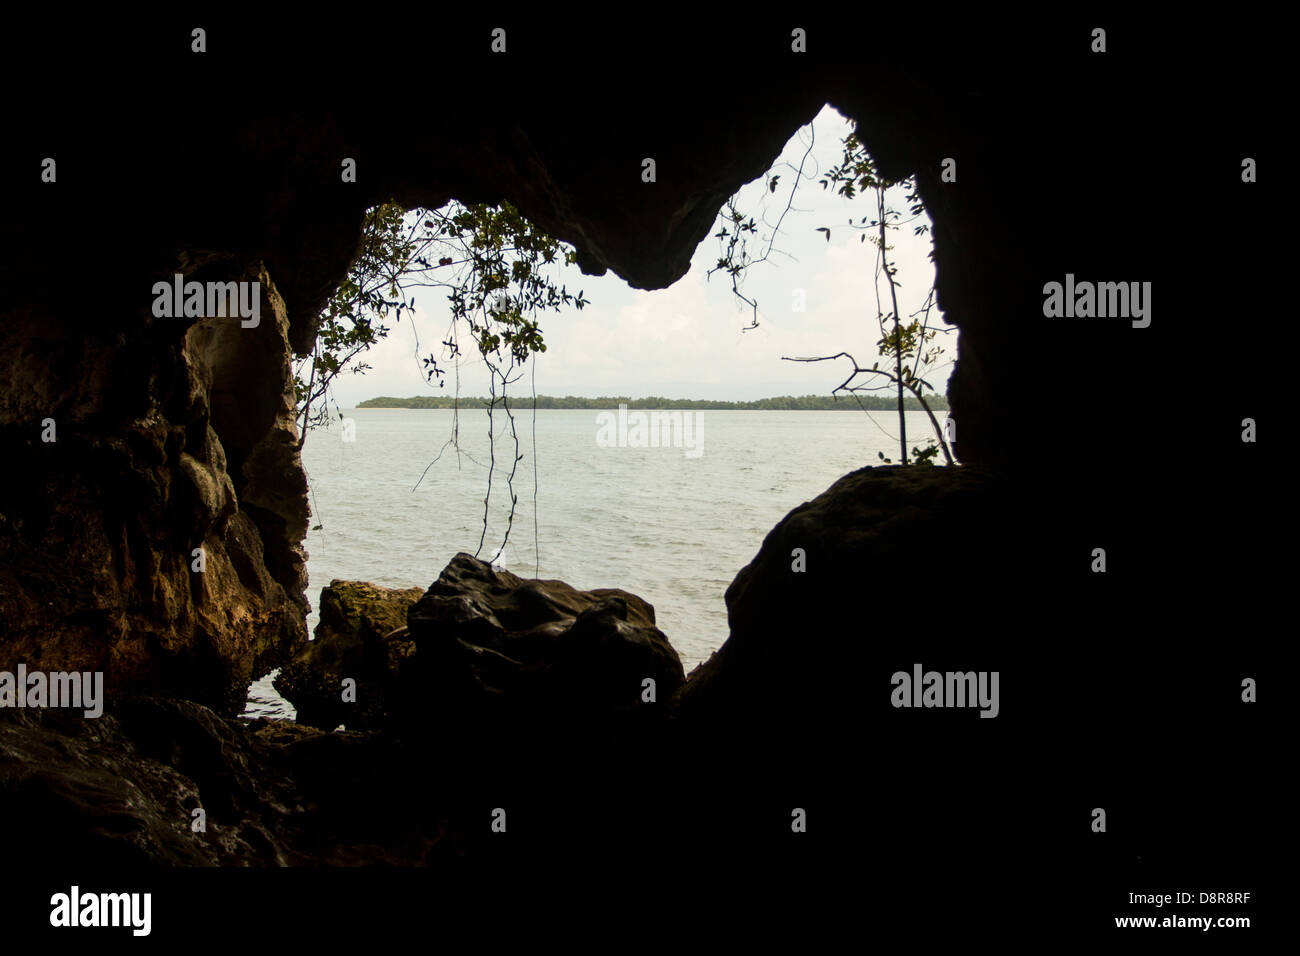 La Arena dans la grotte du parc national Los Haitises, Samana, République dominicaine. Banque D'Images